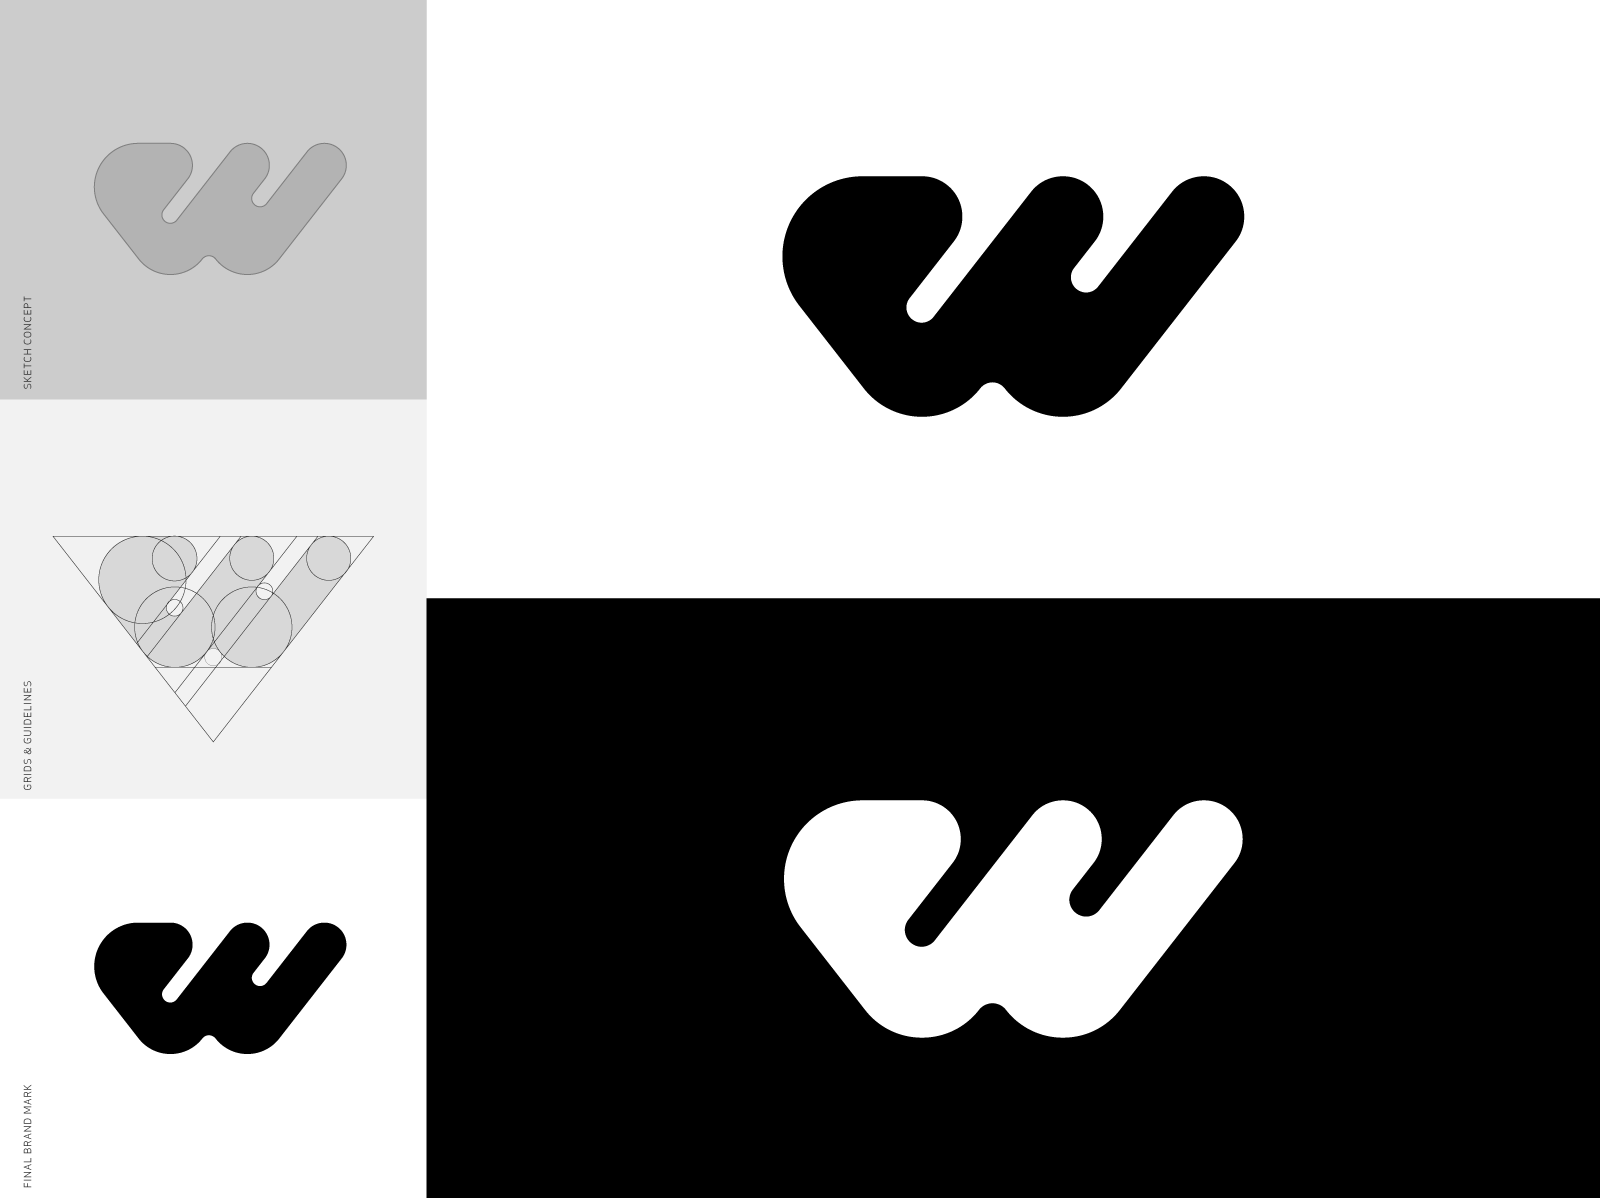 w-brand-mark-logo-design-by-gert-van-duinen-on-dribbble